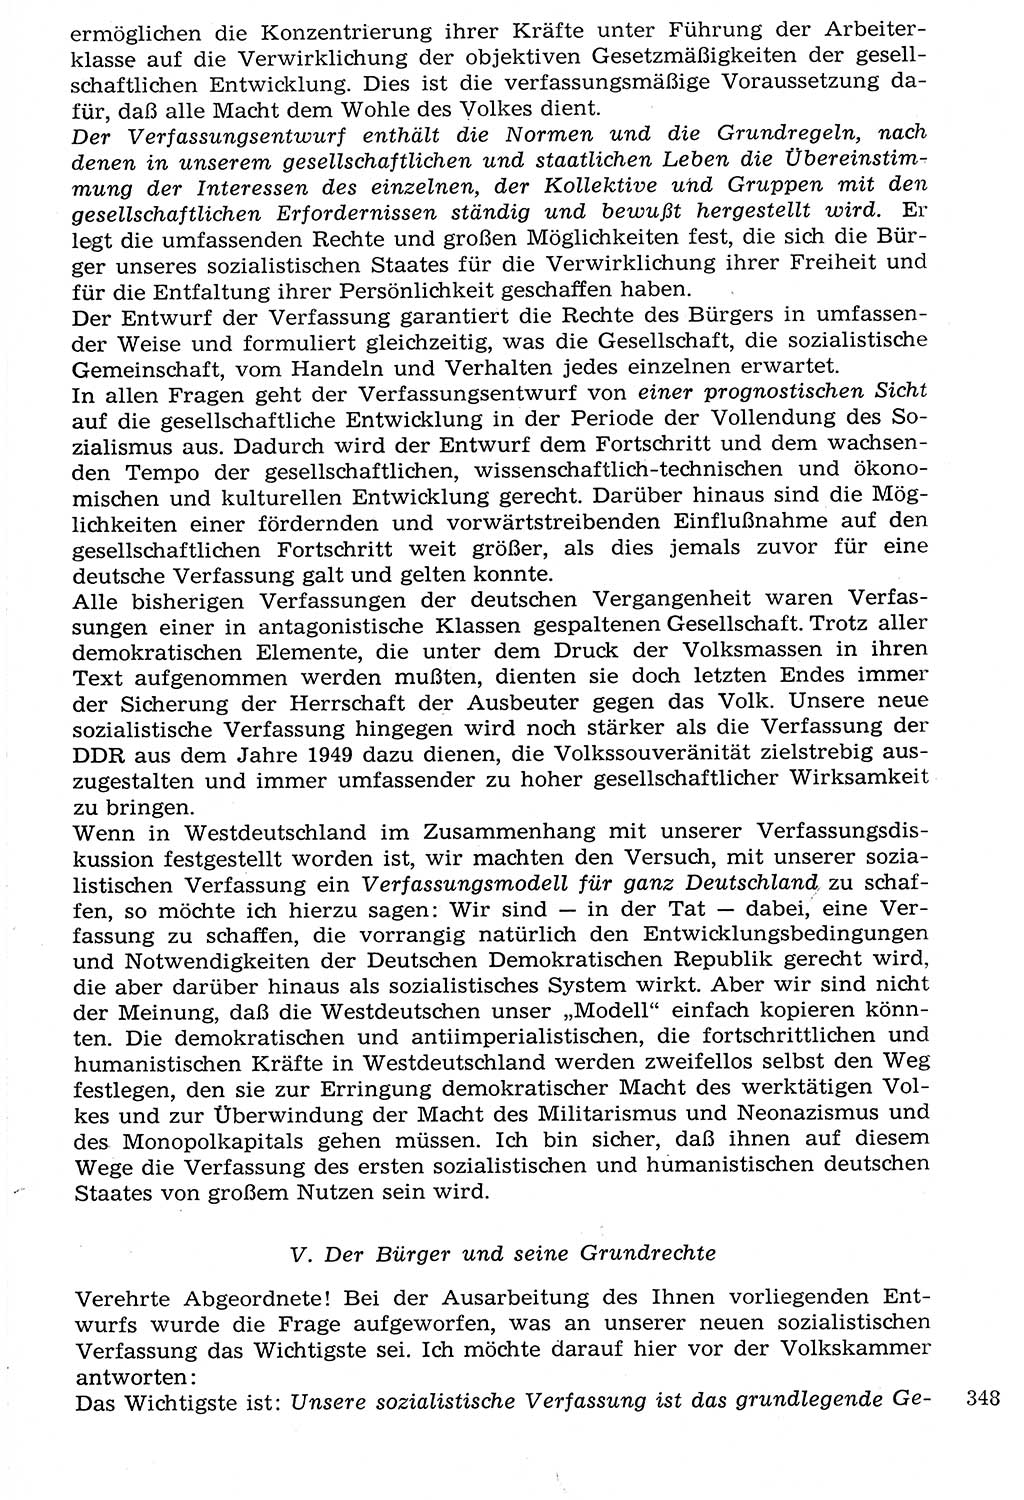 Staat und Recht (StuR), 17. Jahrgang [Deutsche Demokratische Republik (DDR)] 1968, Seite 348 (StuR DDR 1968, S. 348)